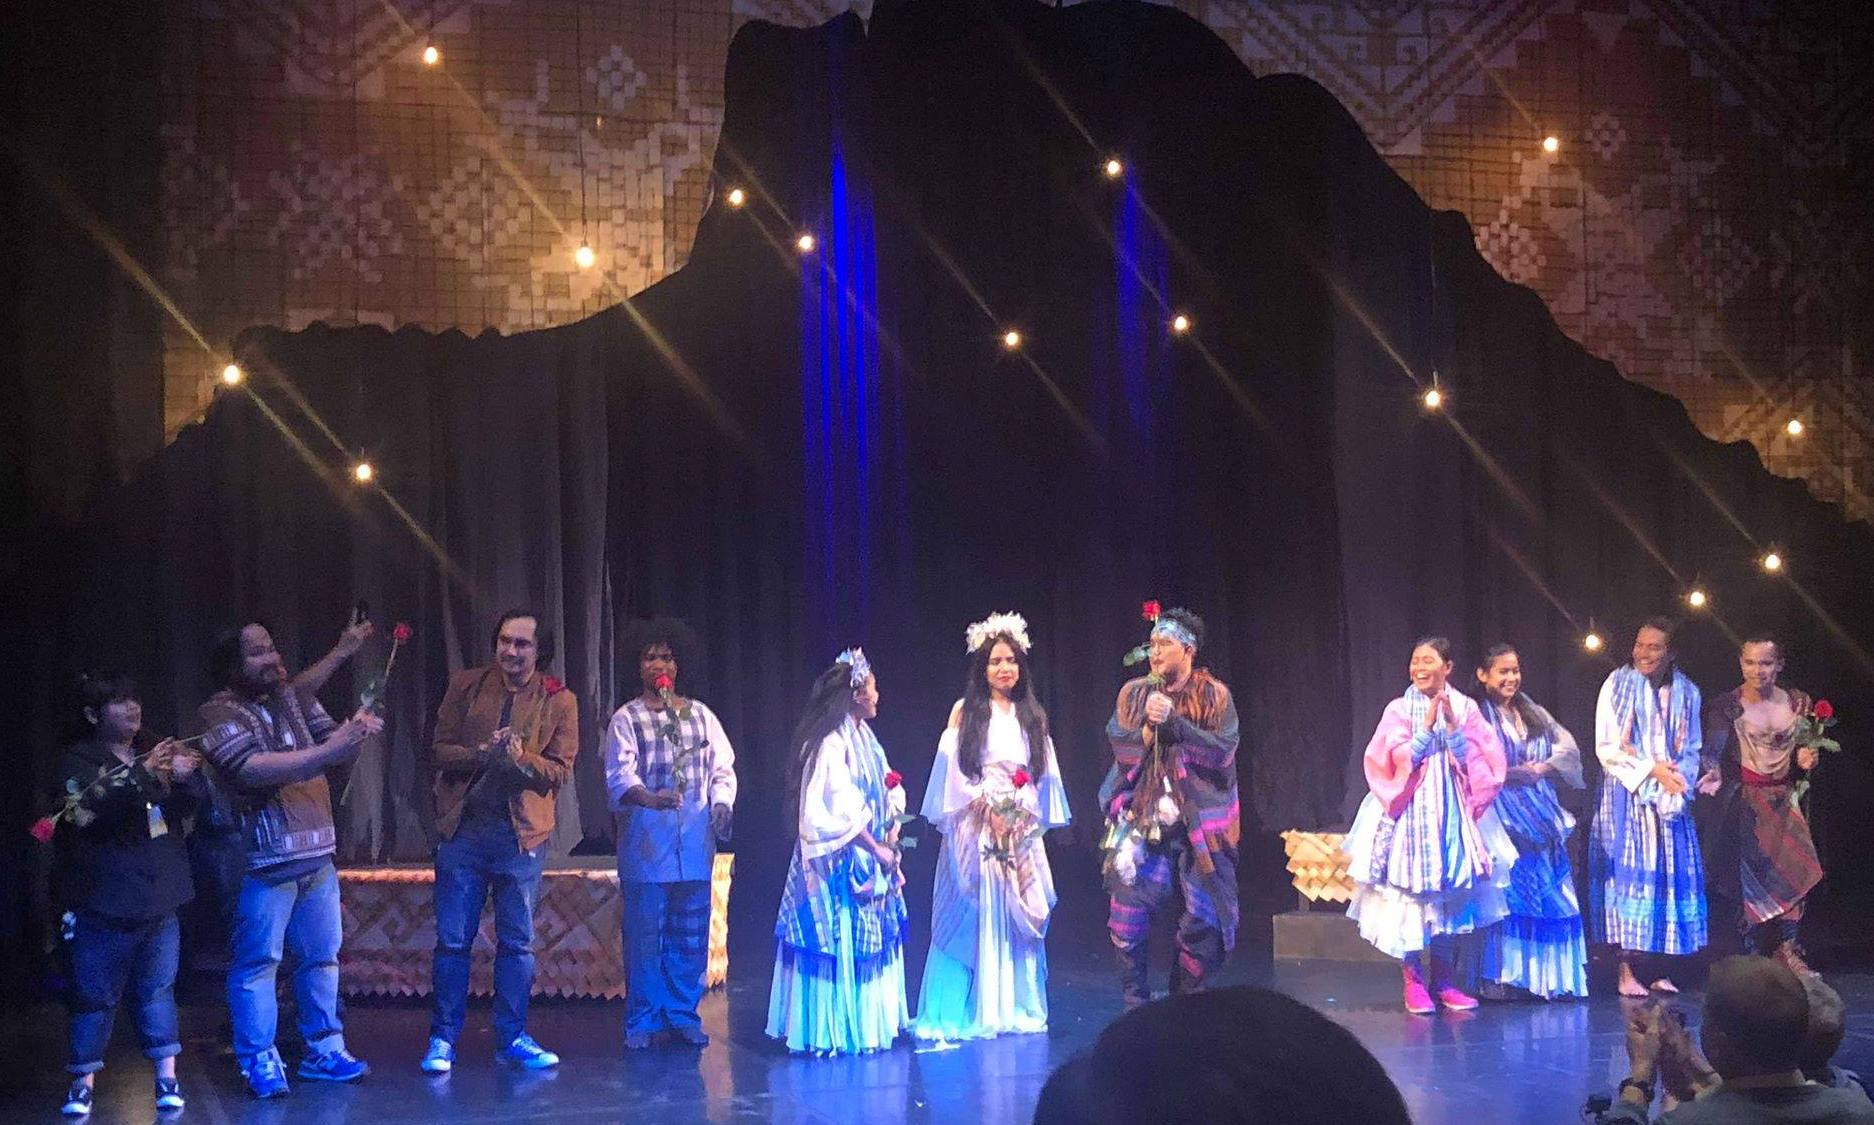 Tanghalang Pilipino actors taking their bows after a performance of “Nang Dalawin ng Pag-ibig si Juan Tamad” at the Theatre Centre Vishnevy Sad in Moscow, Russia. PHOTO BY SHERYL SONGSONG